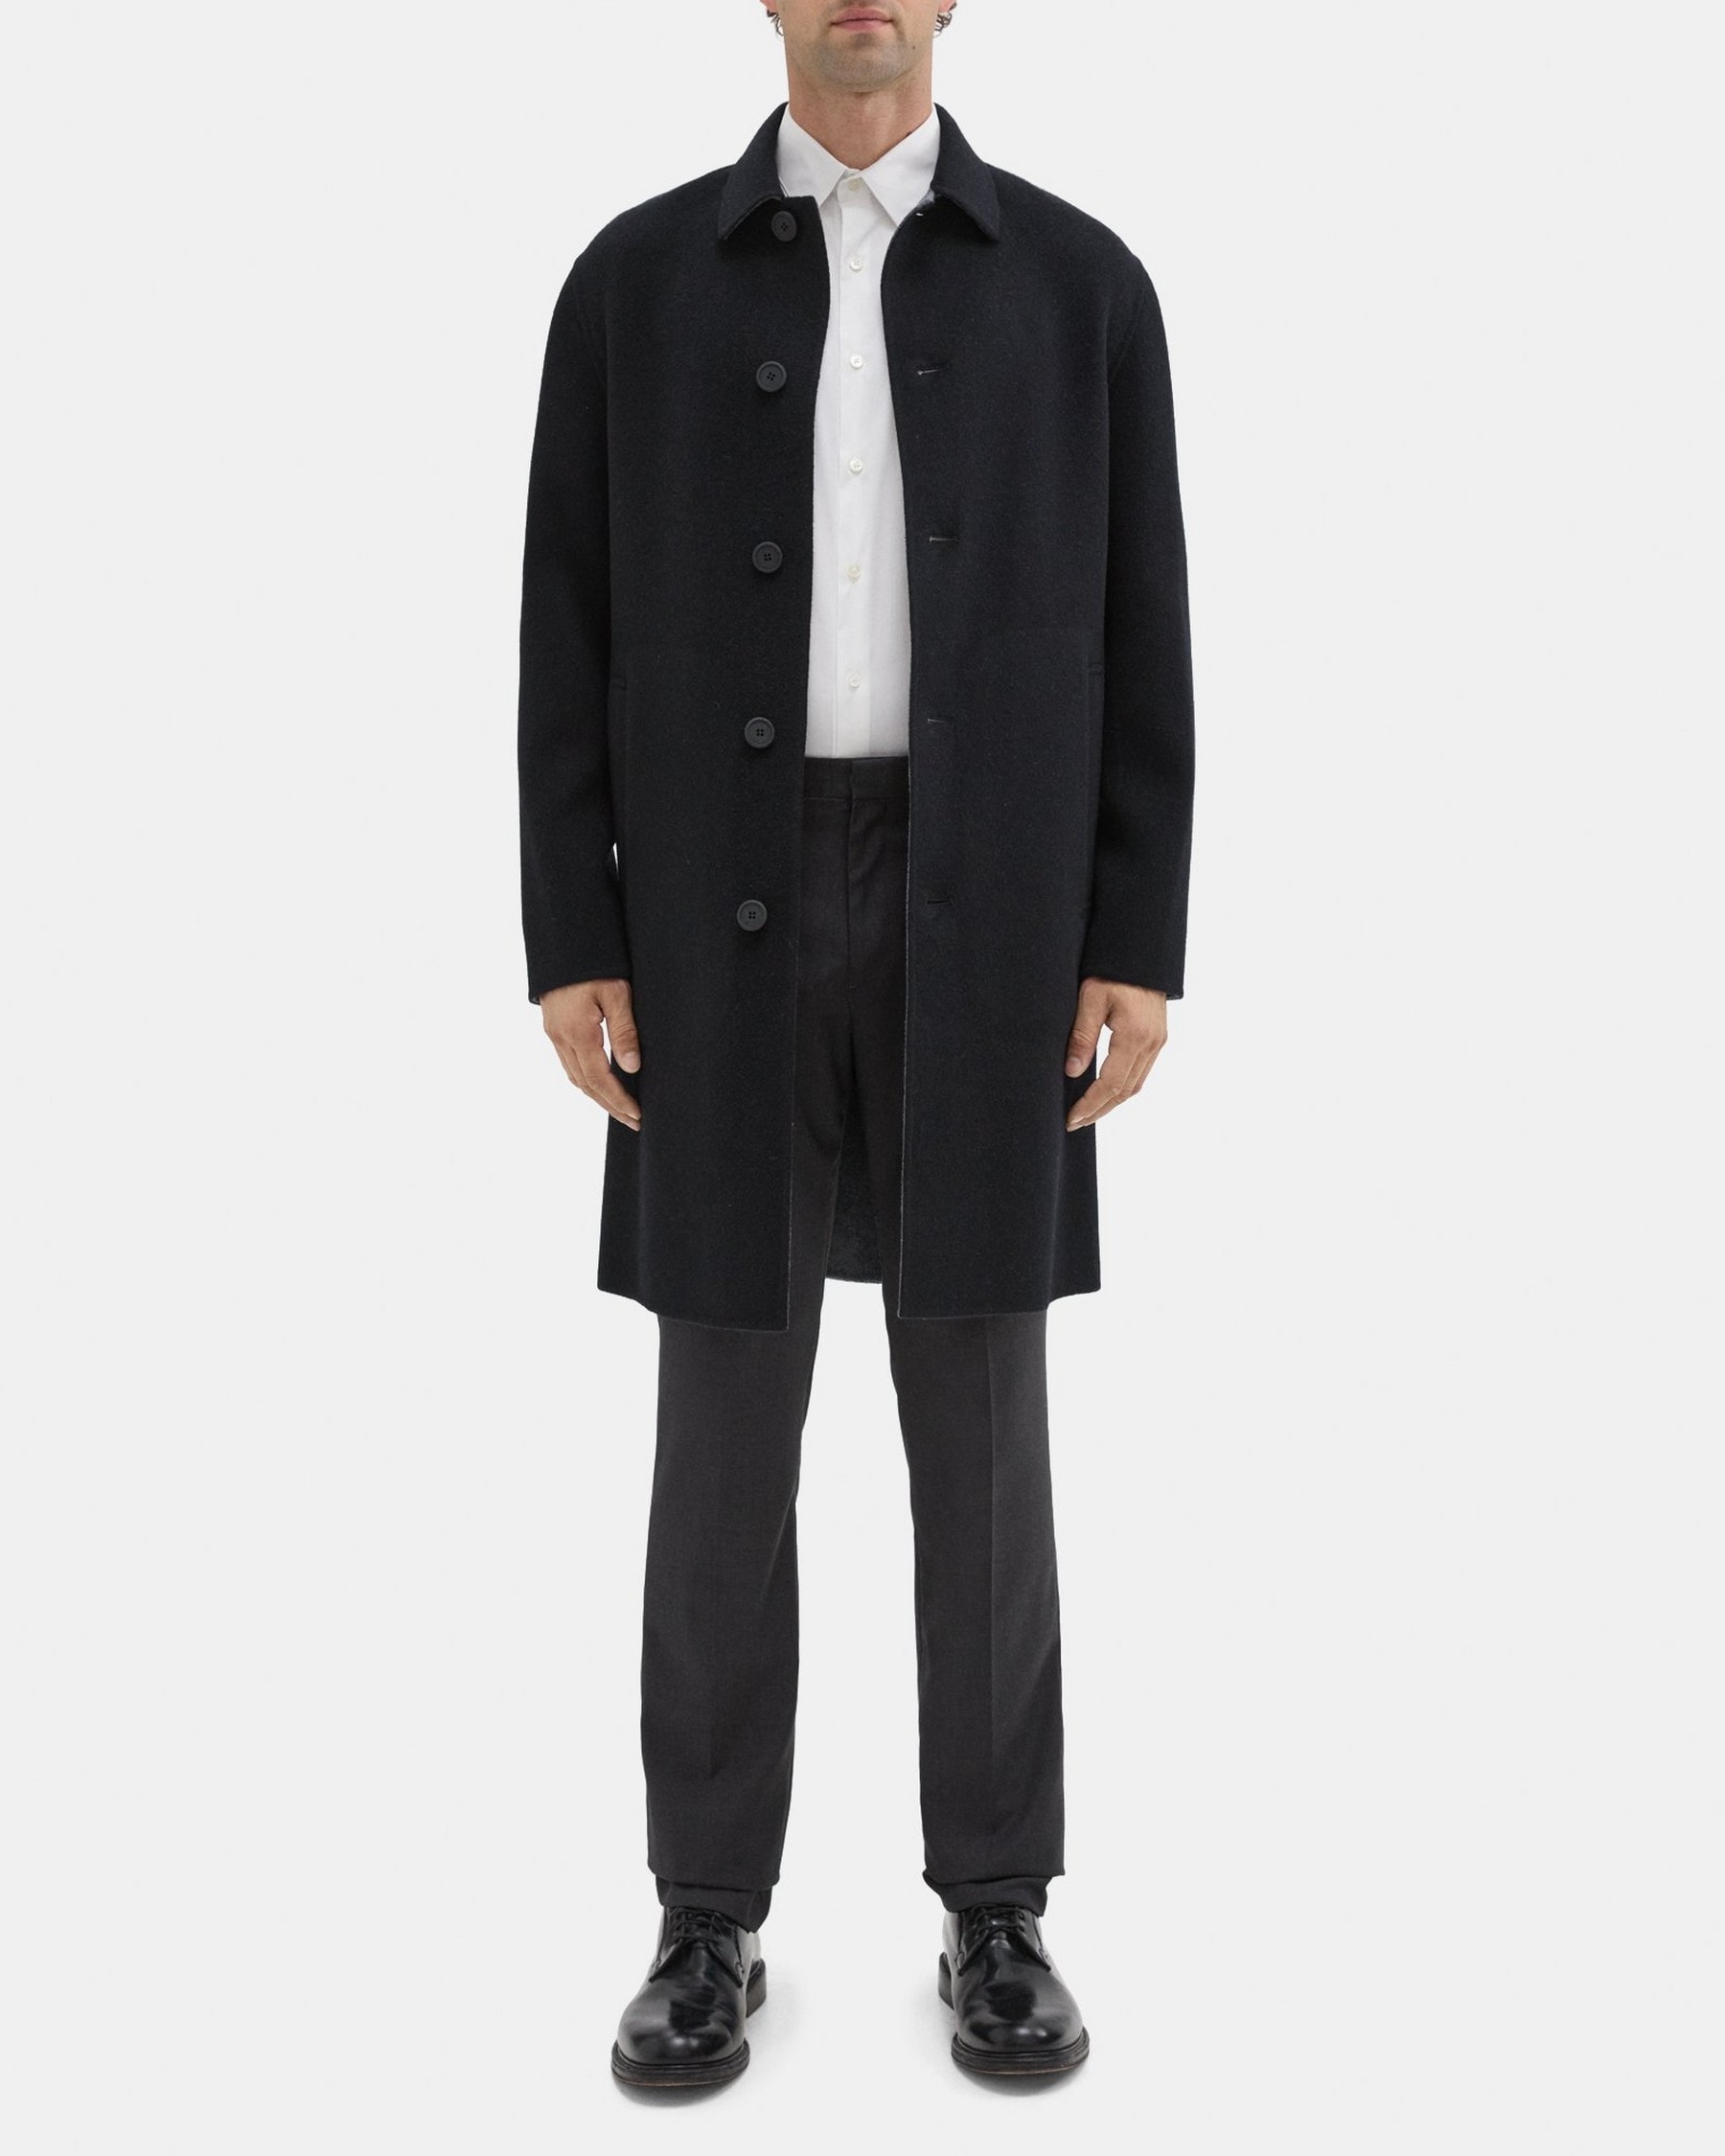 띠어리 Theory Caban Coat in Double-Face Wool-Cashmere,BLACK/DARK GREY MELANGE